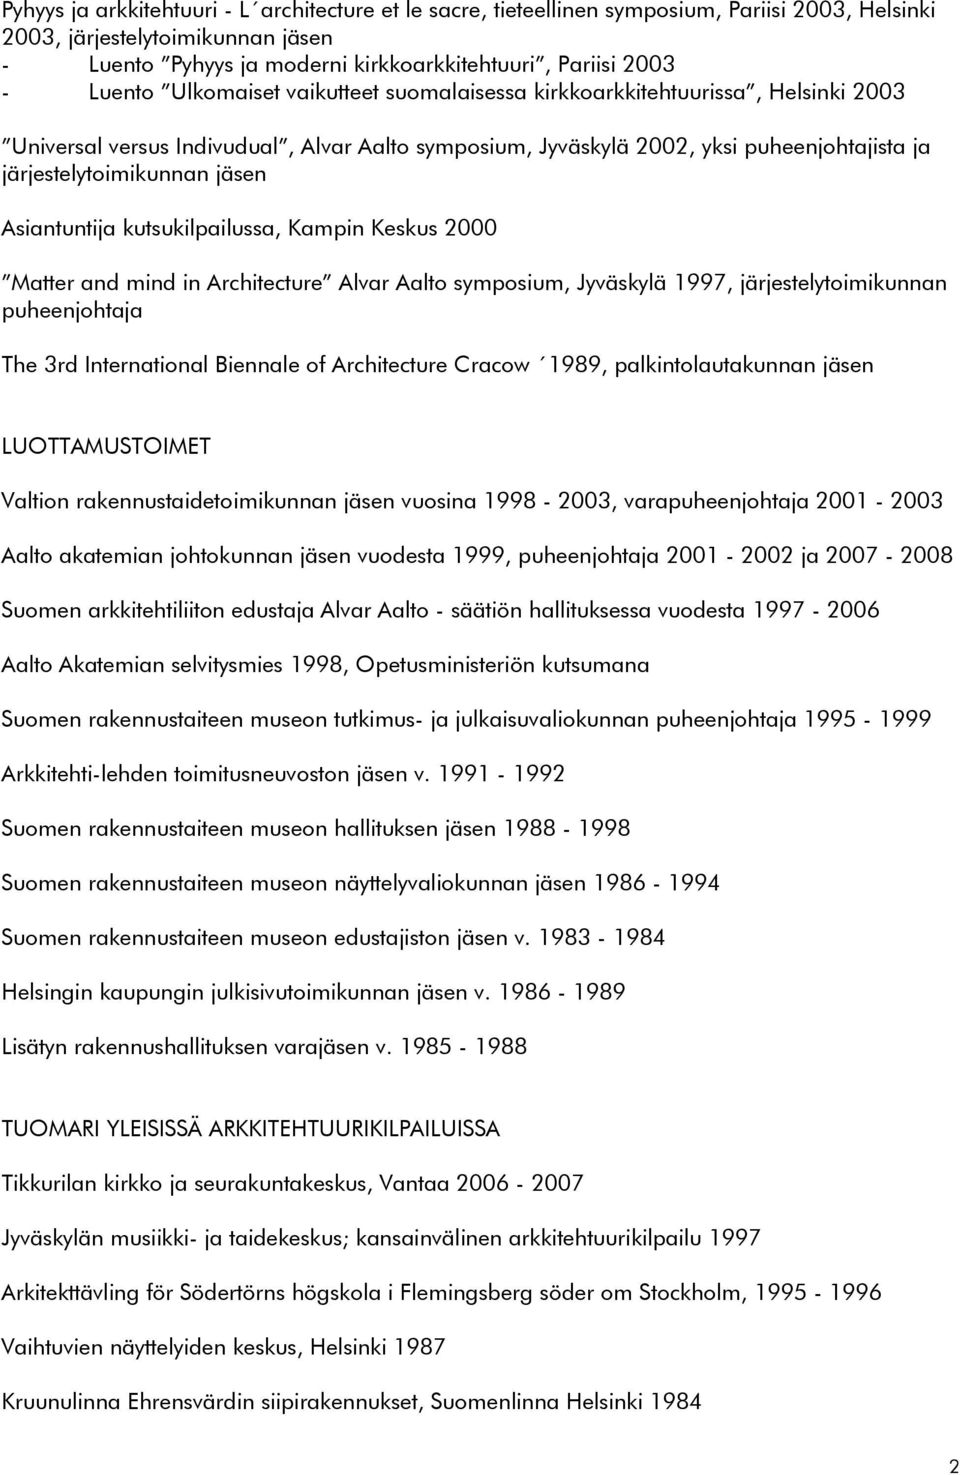 jäsen Asiantuntija kutsukilpailussa, Kampin Keskus 2000 Matter and mind in Architecture Alvar Aalto symposium, Jyväskylä 1997, järjestelytoimikunnan puheenjohtaja The 3rd International Biennale of